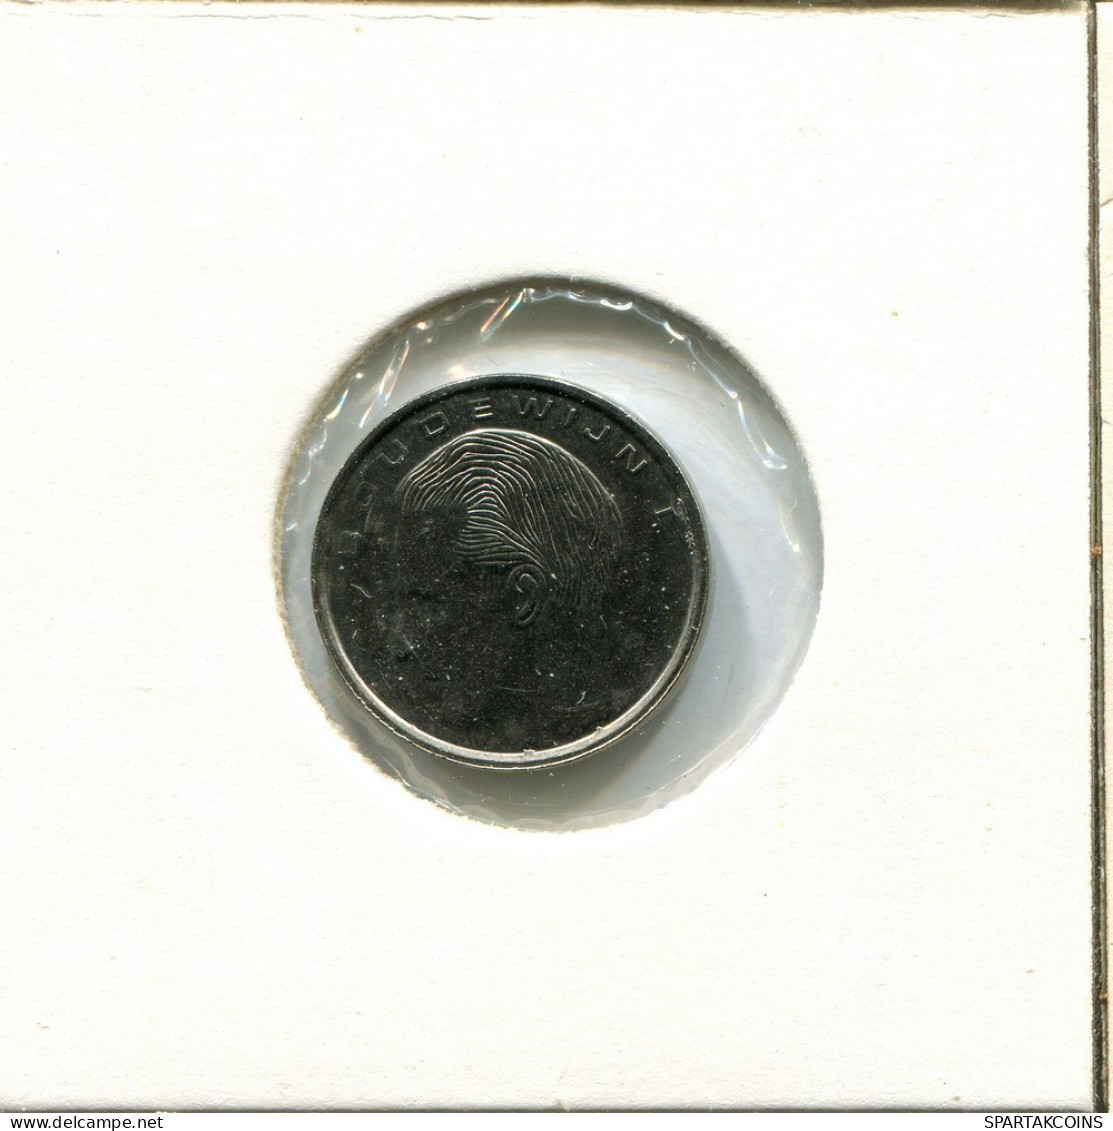 1 FRANC 1990 DUTCH Text BELGIUM Coin #AU634.U.A - 1 Franc